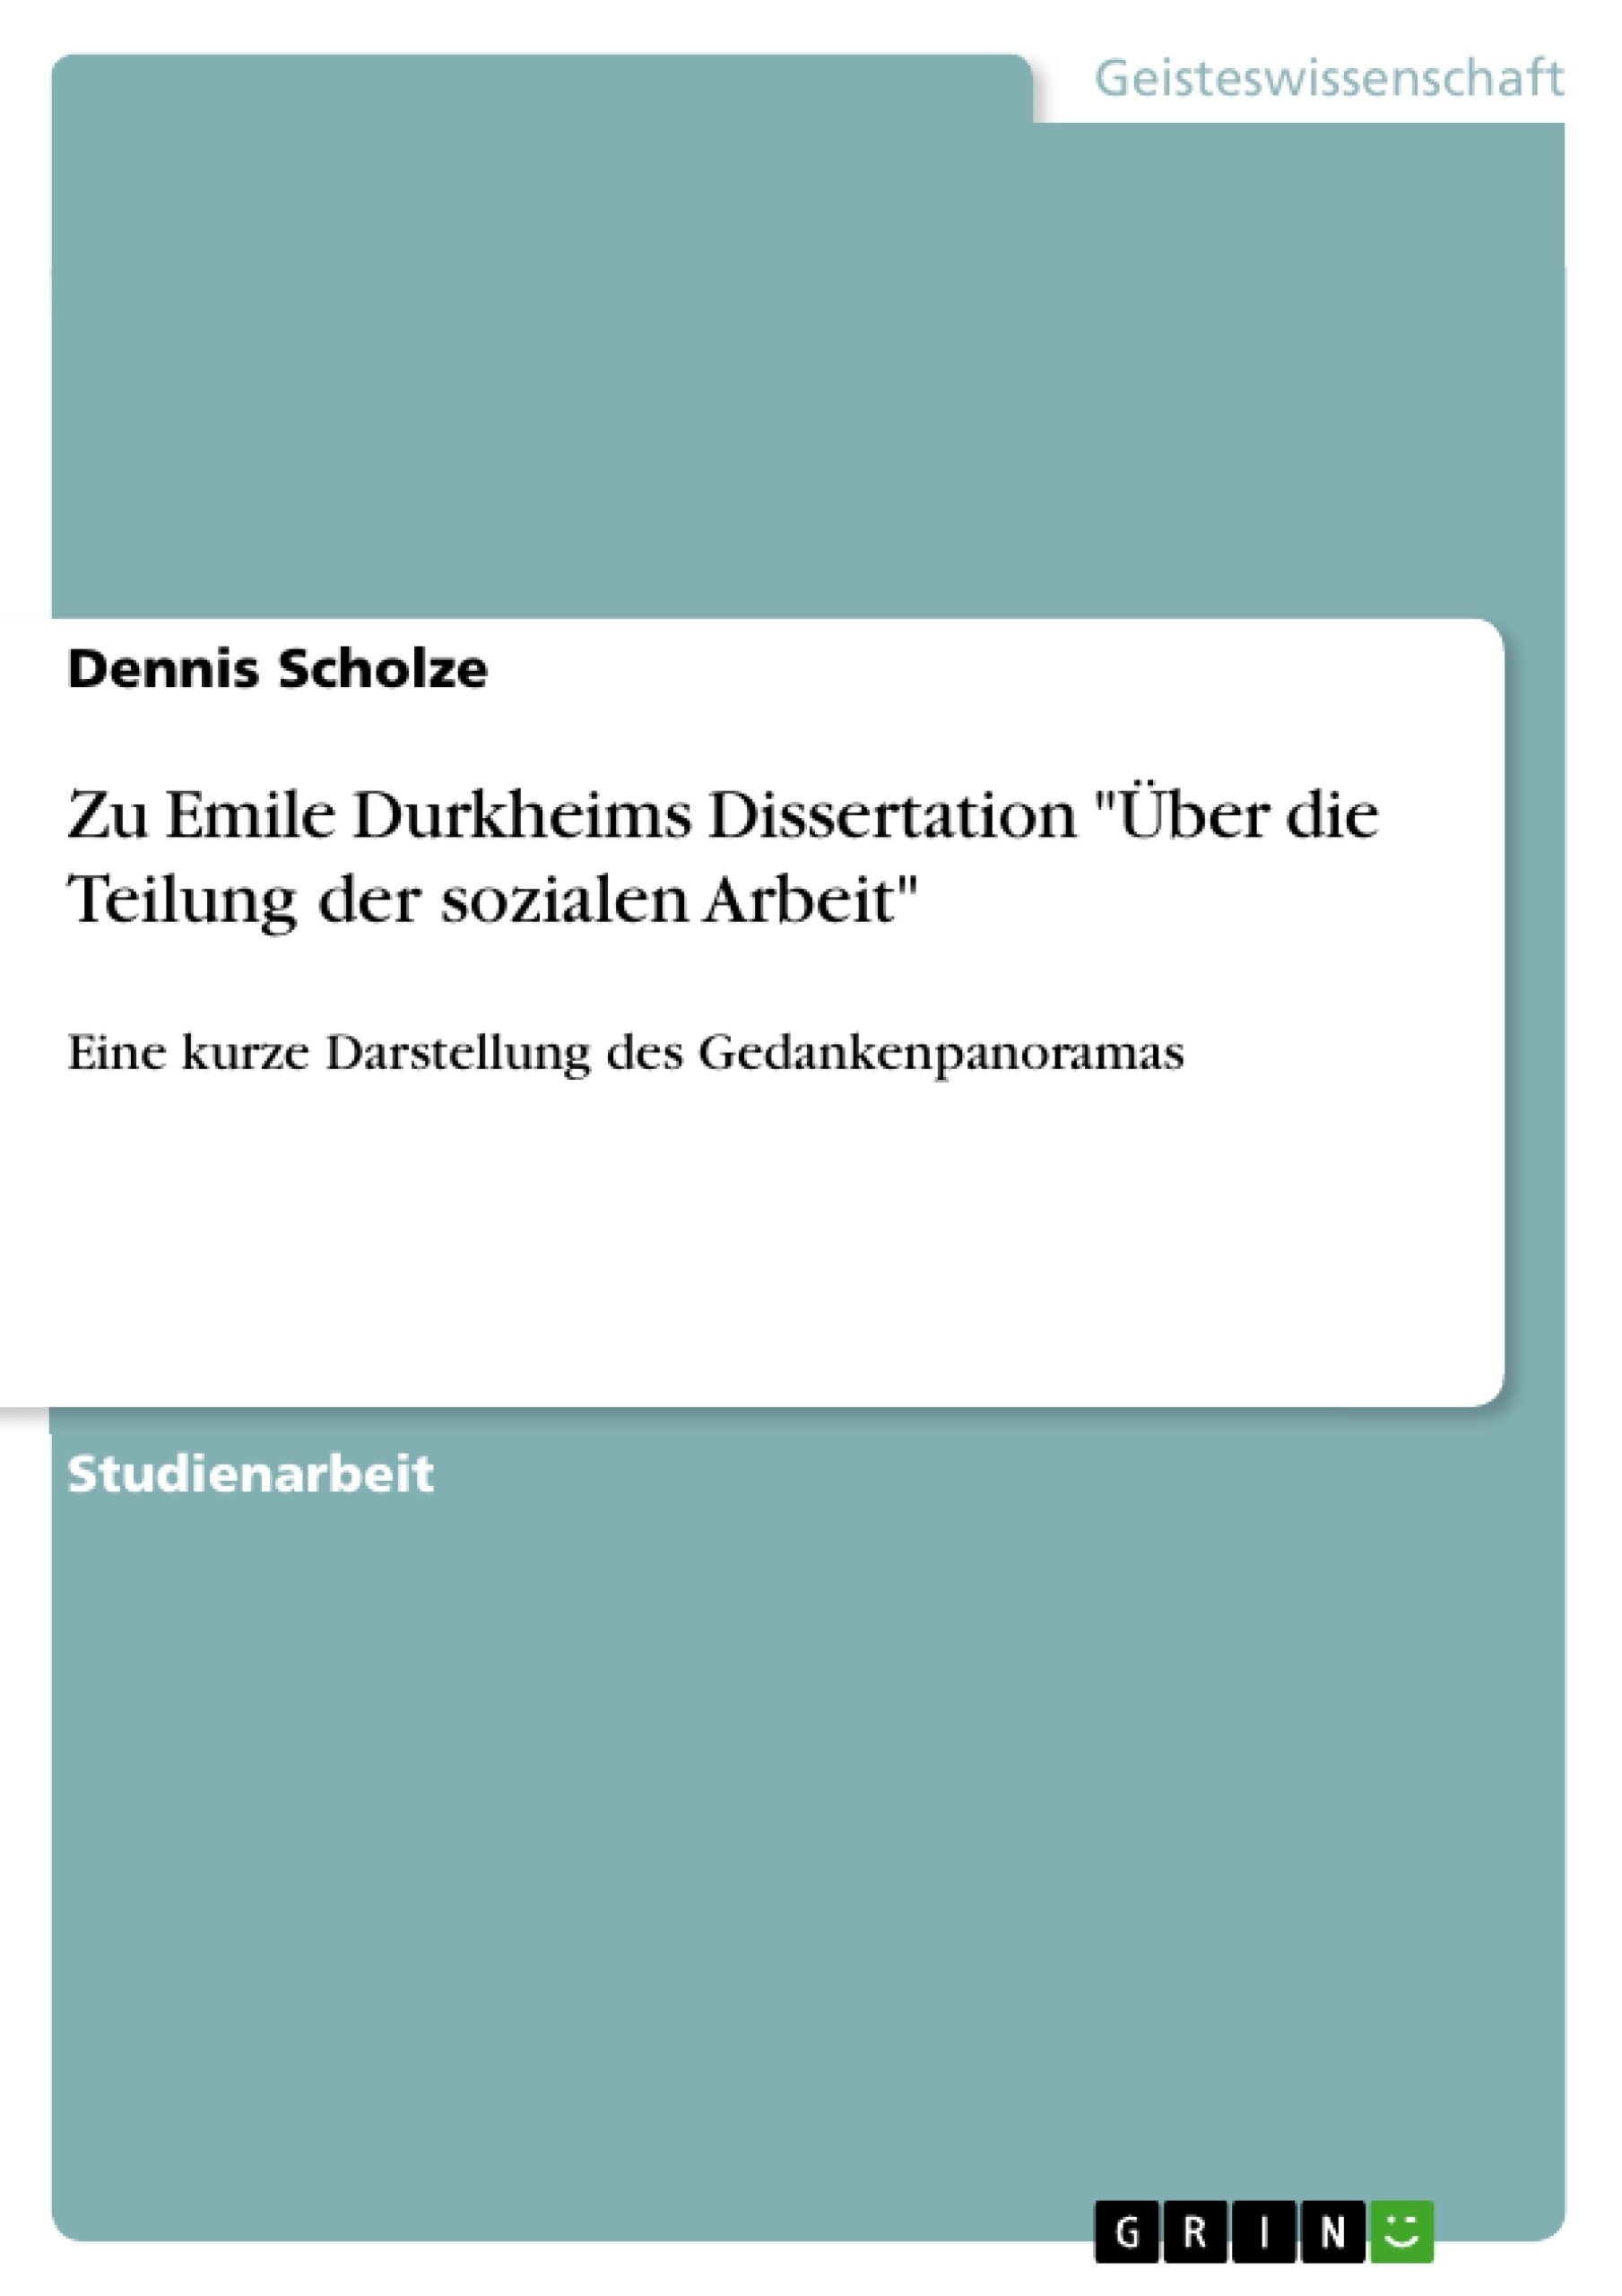 Title: Zu Emile Durkheims Dissertation "Über die Teilung der sozialen Arbeit"